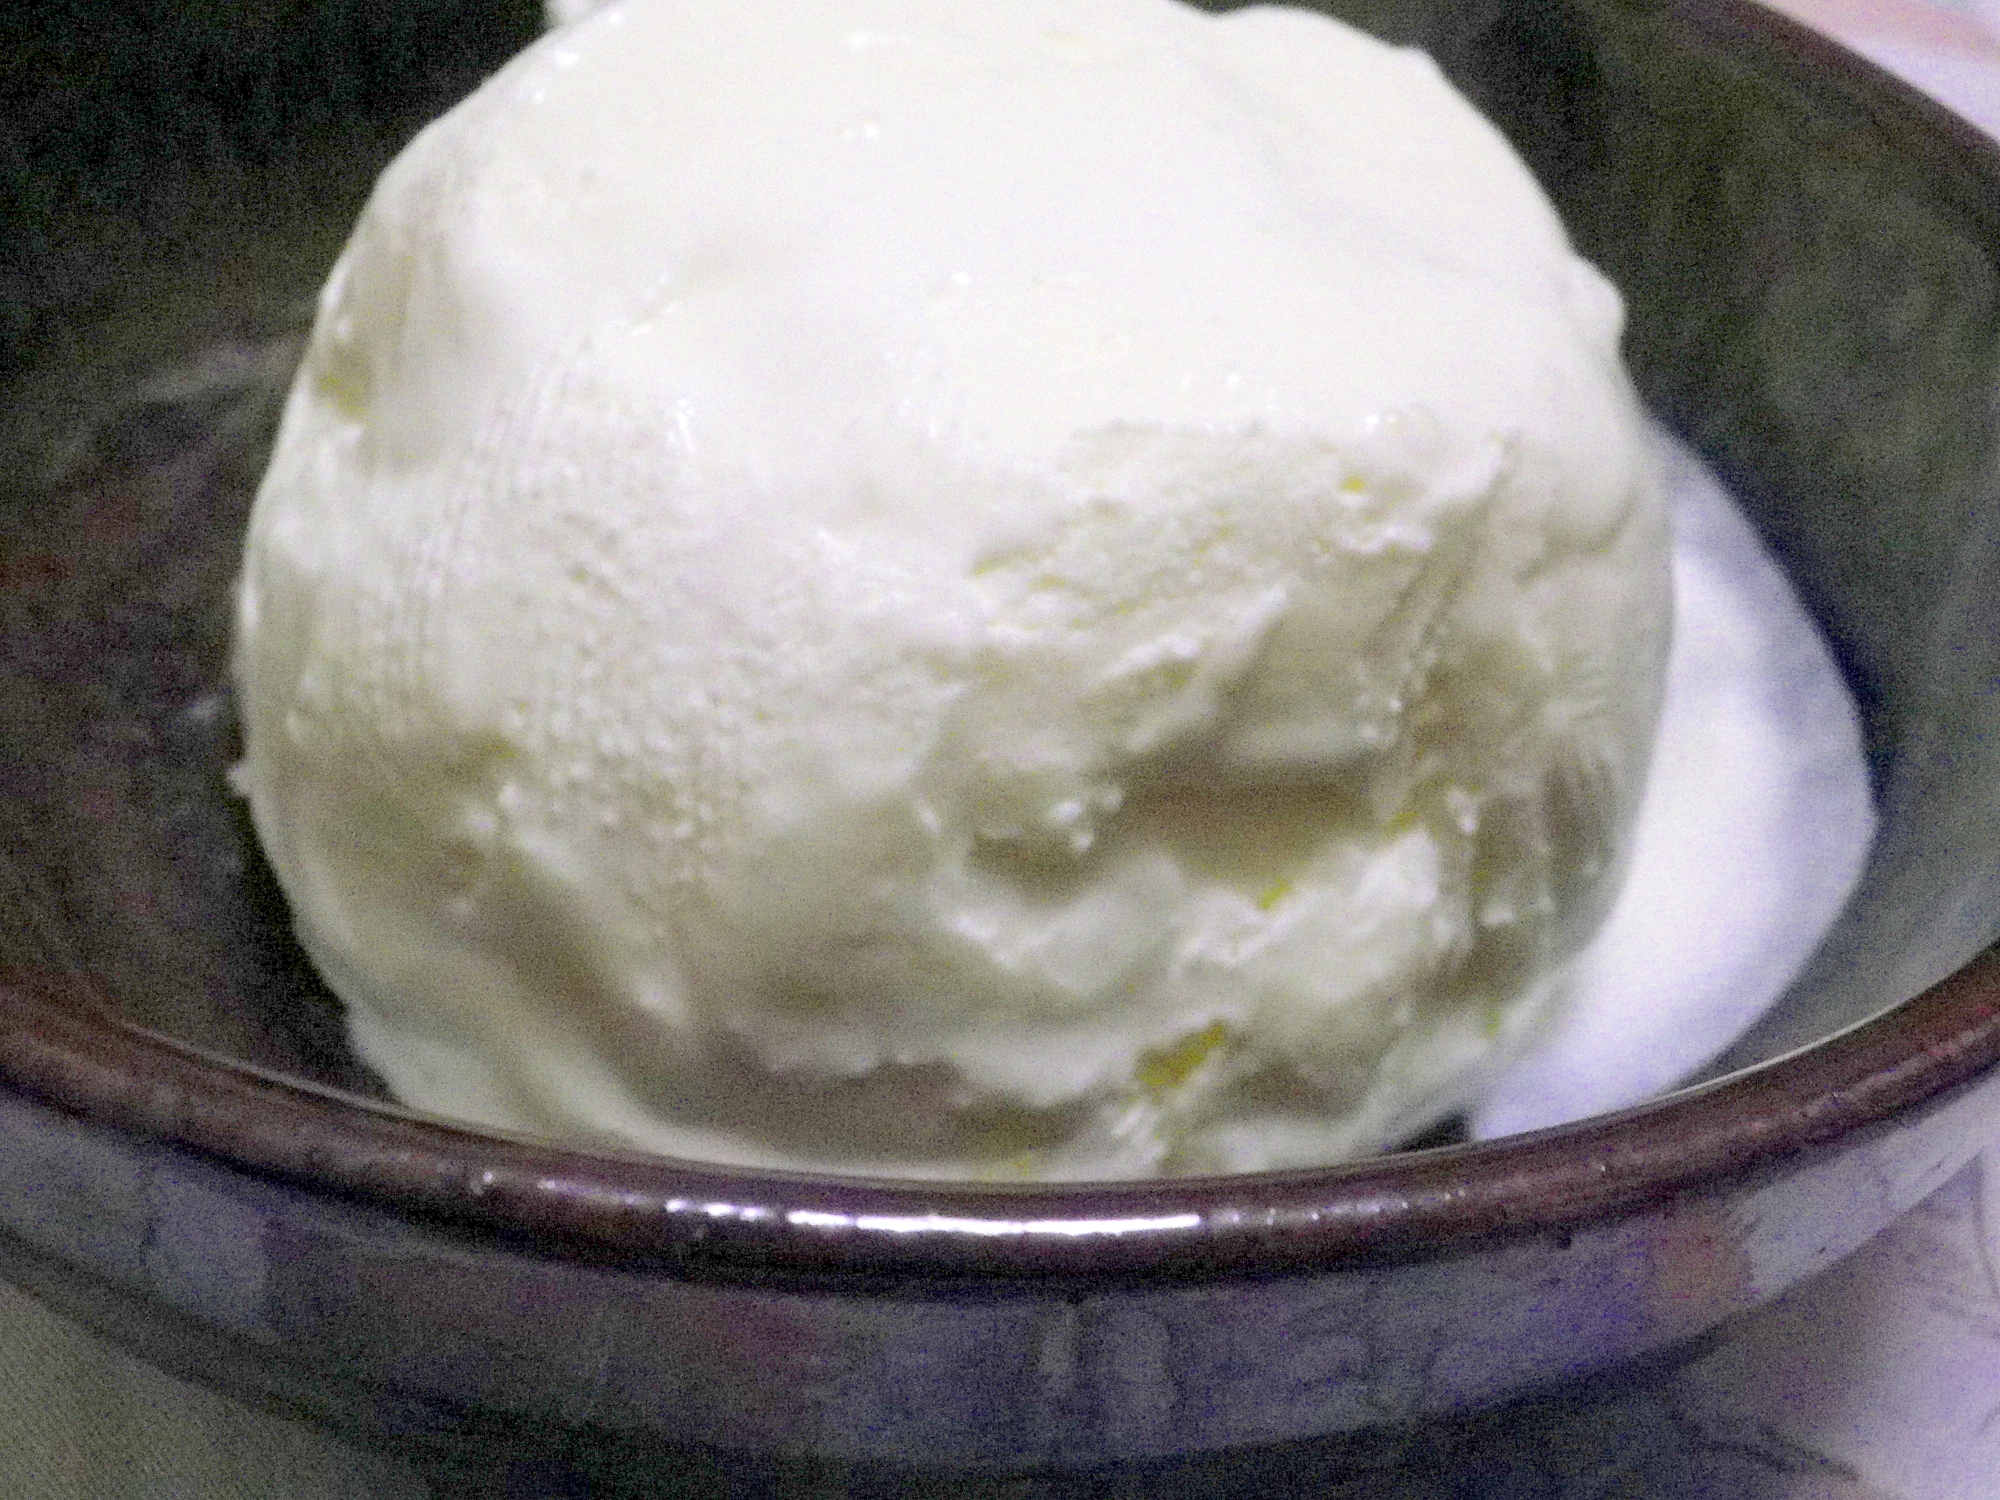 バニラのアイスクリーム